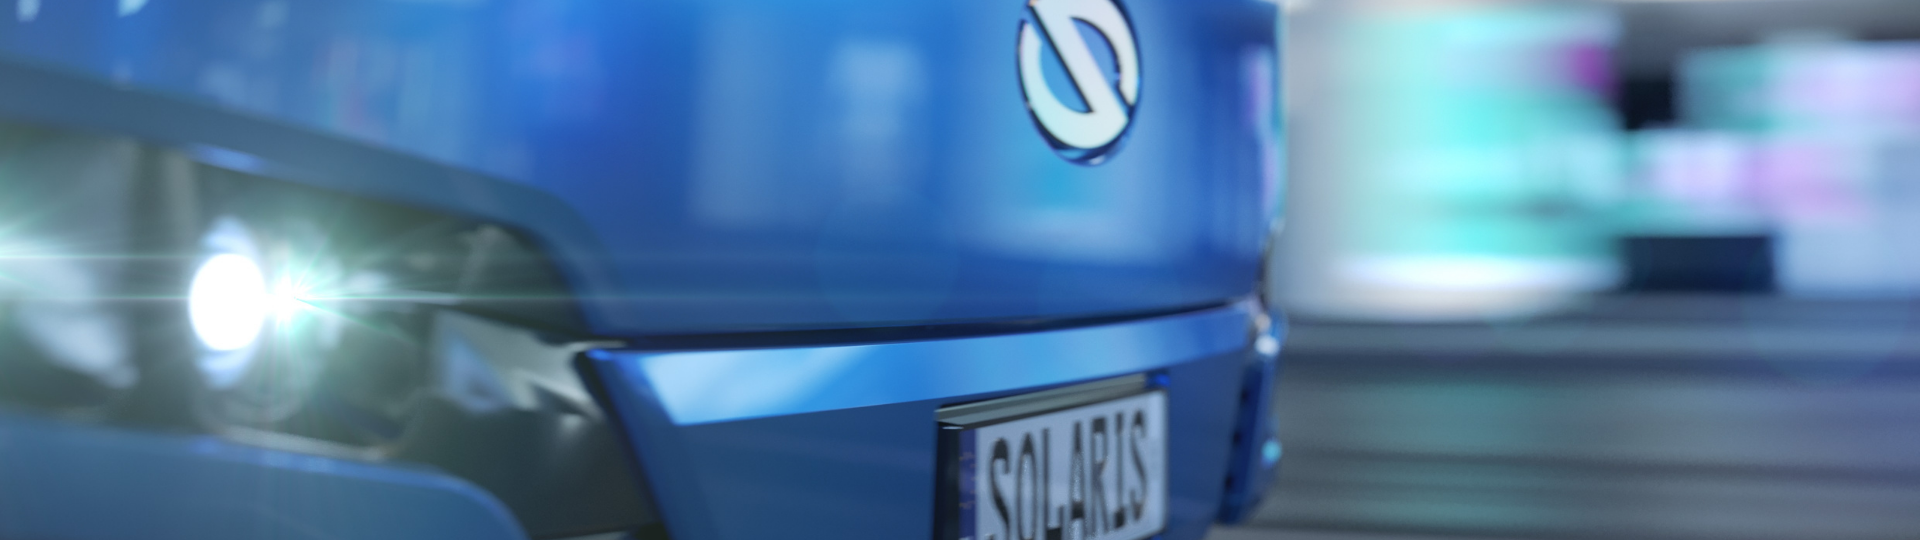 Premiera online nowego modelu autobusu elektrycznego marki Solaris